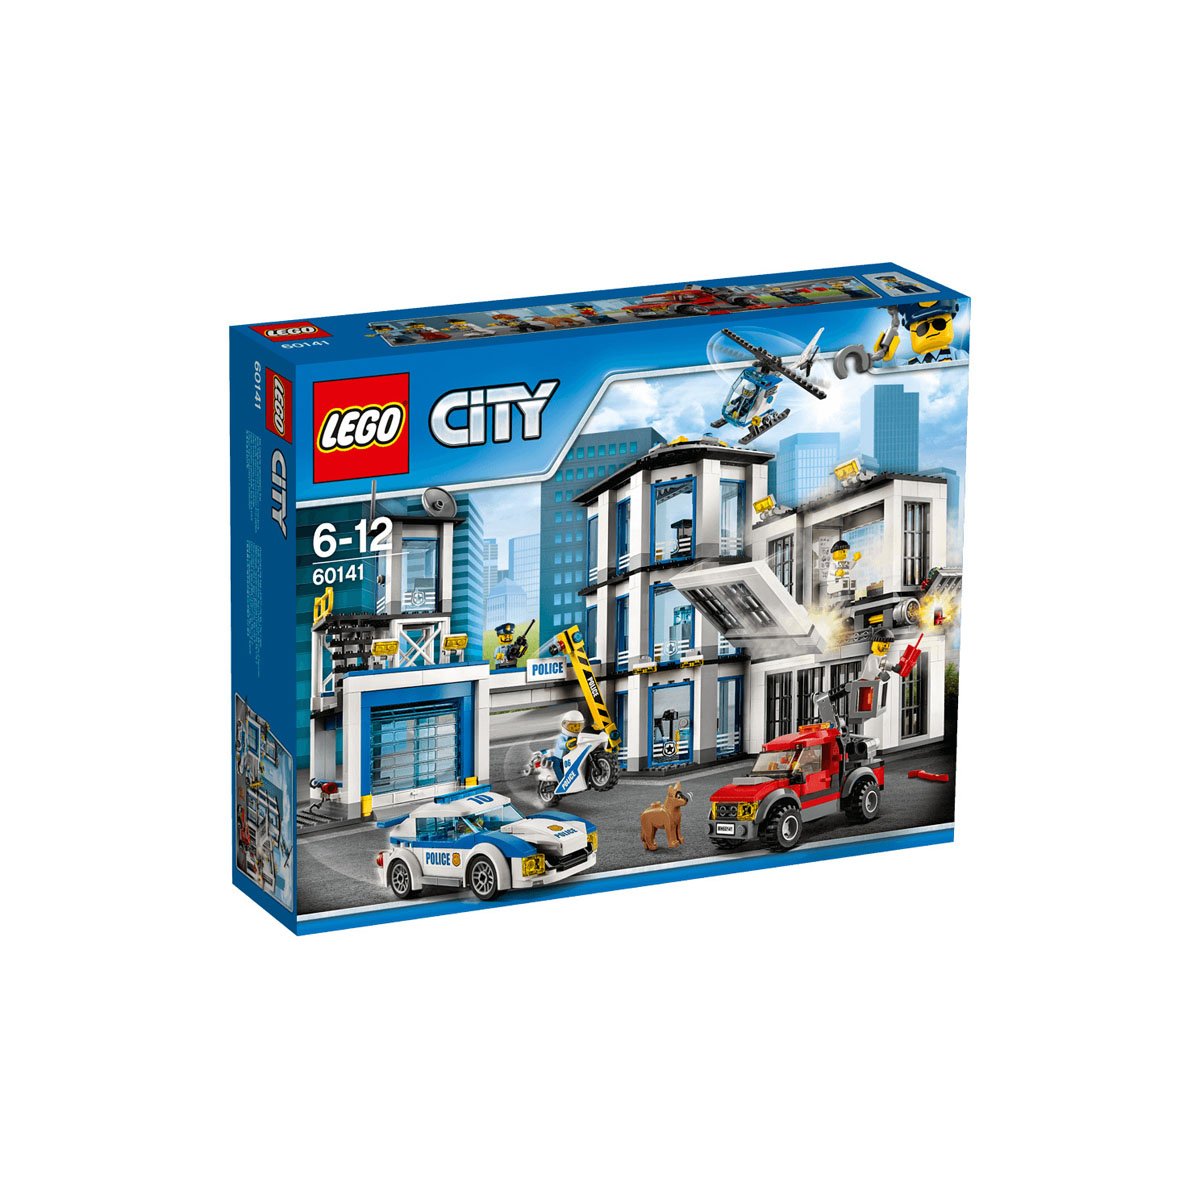 Estacion de Policia Lego